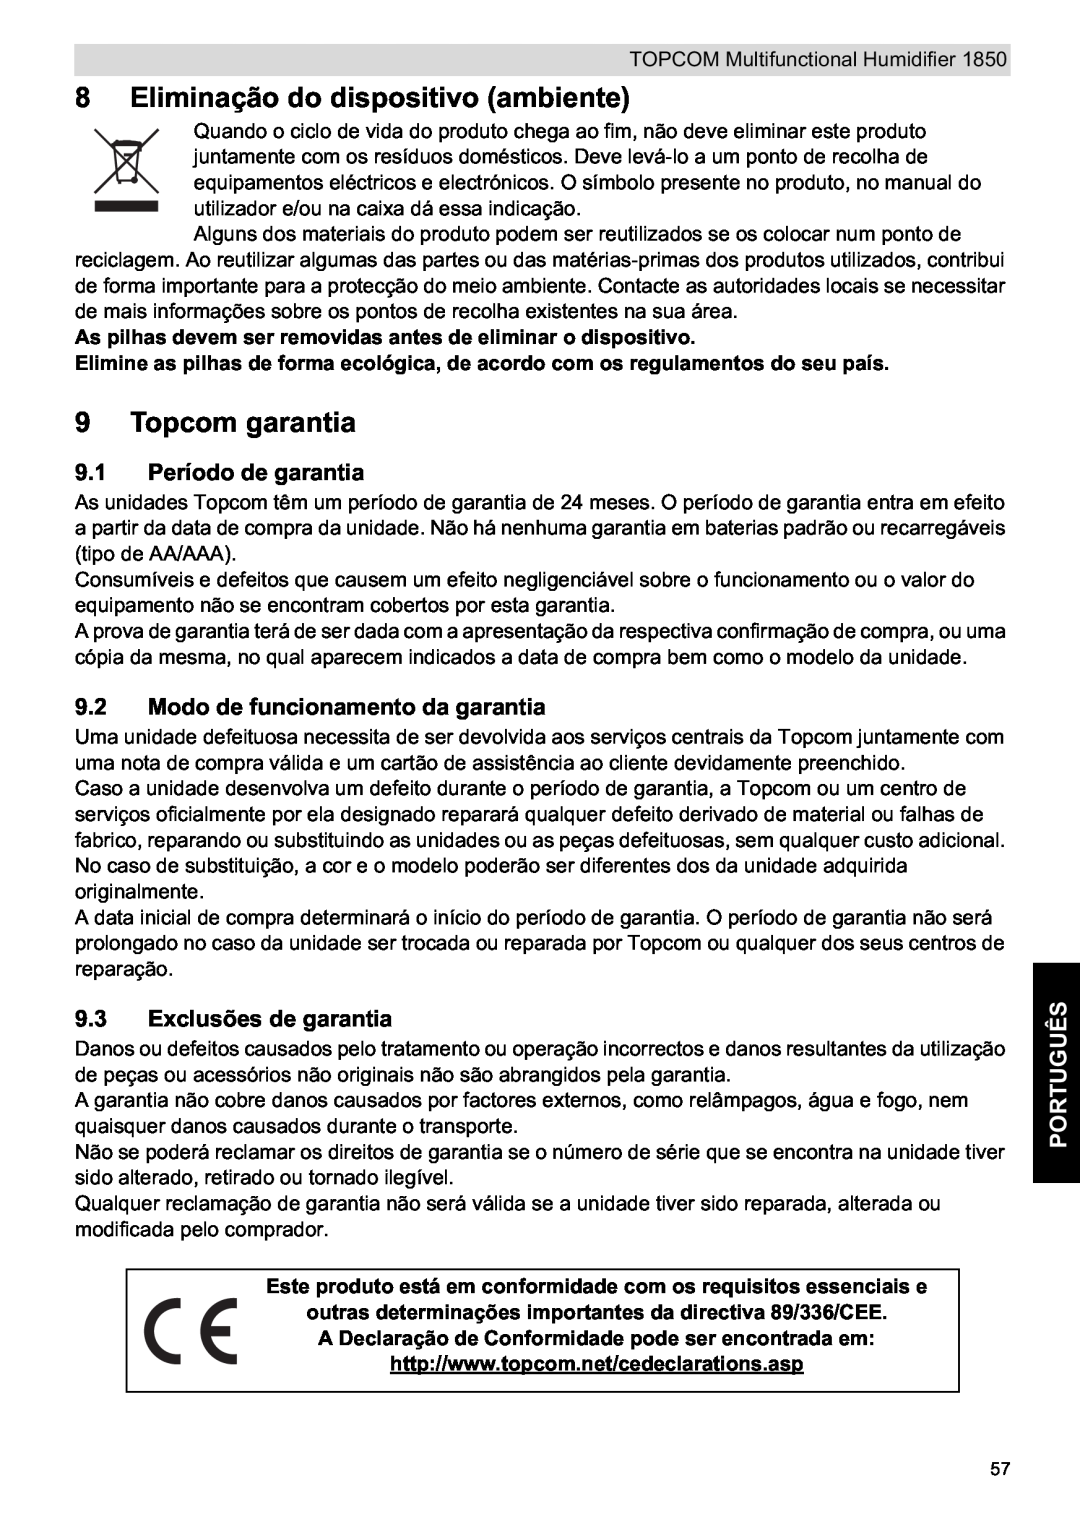 Topcom 1850 Eliminação do dispositivo ambiente, Topcom garantia, 9.1 Período de garantia, Exclusões de garantia, Português 